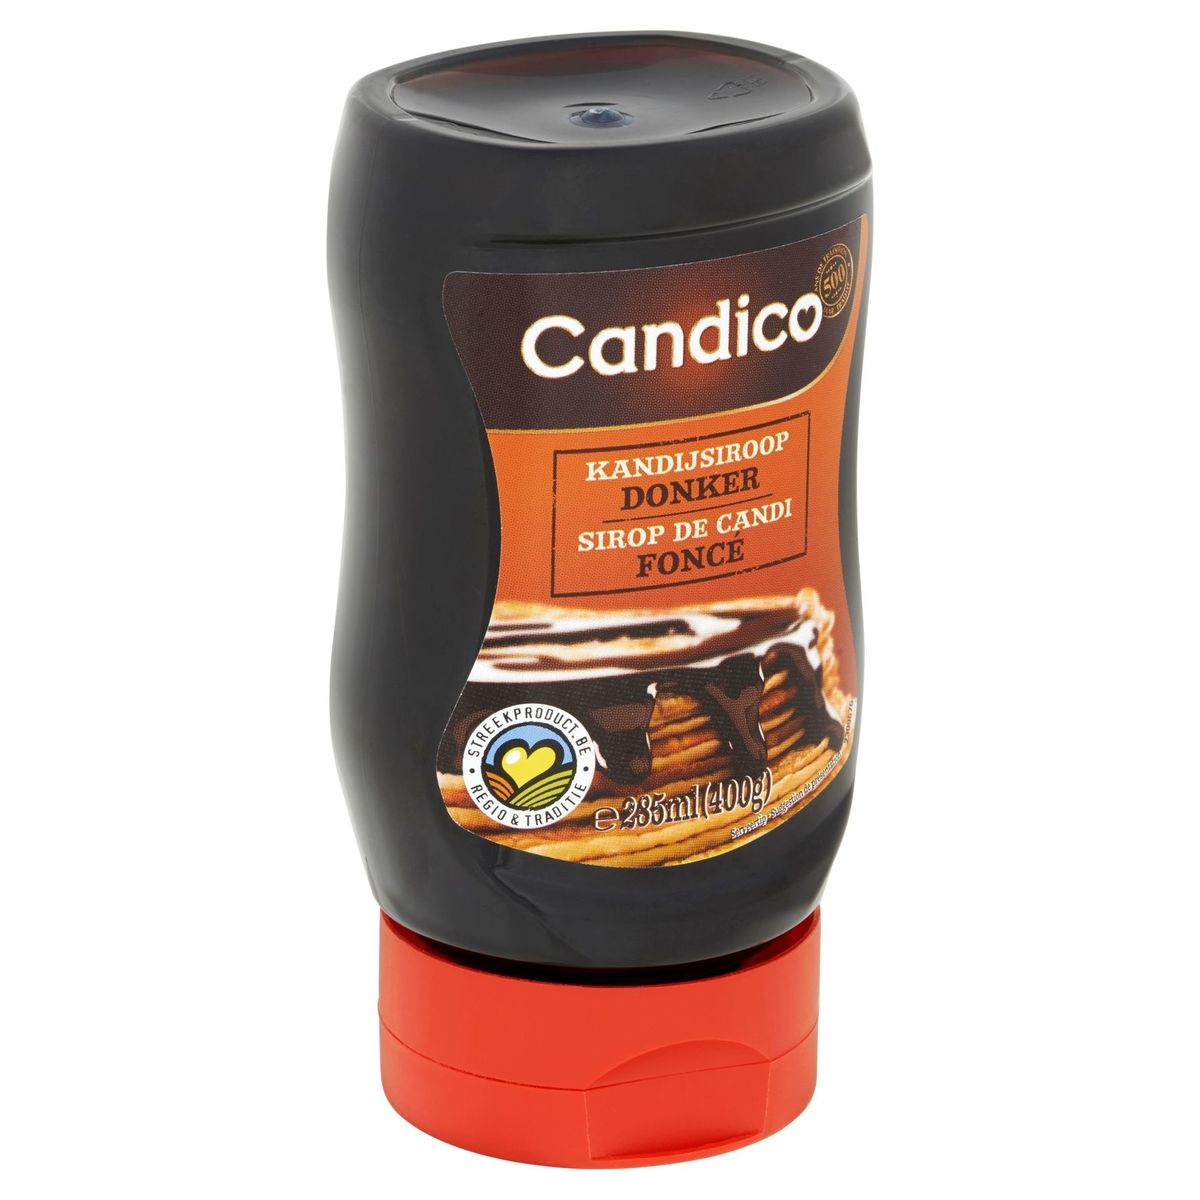 Candico Kandijsiroop Donker 400 g